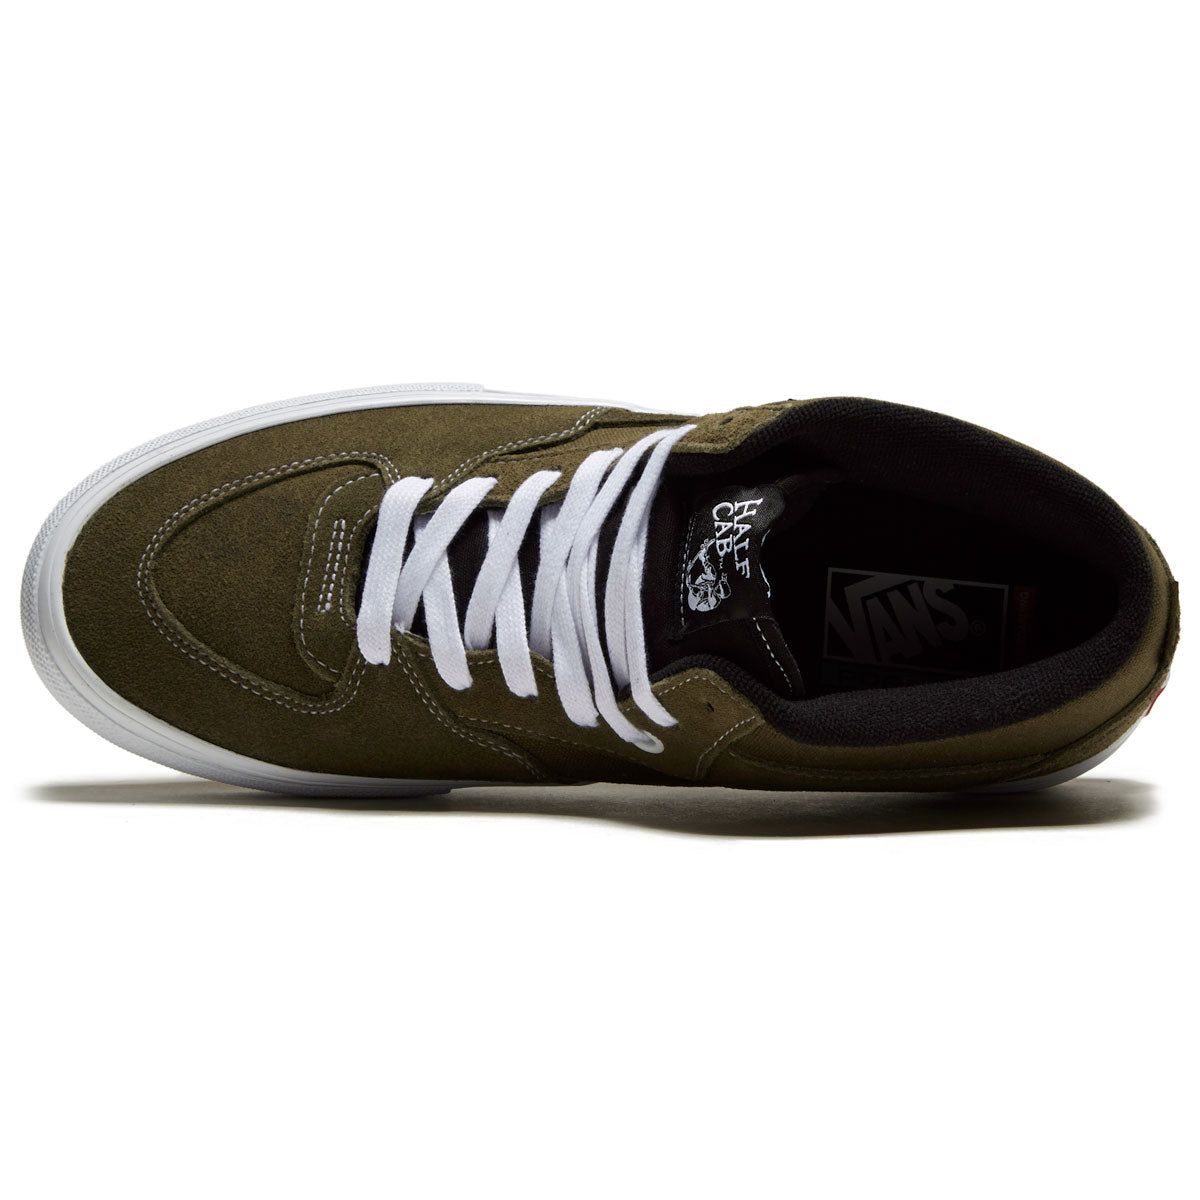 Vans Skate Half Cab Shoes - Dark Olive – CCS